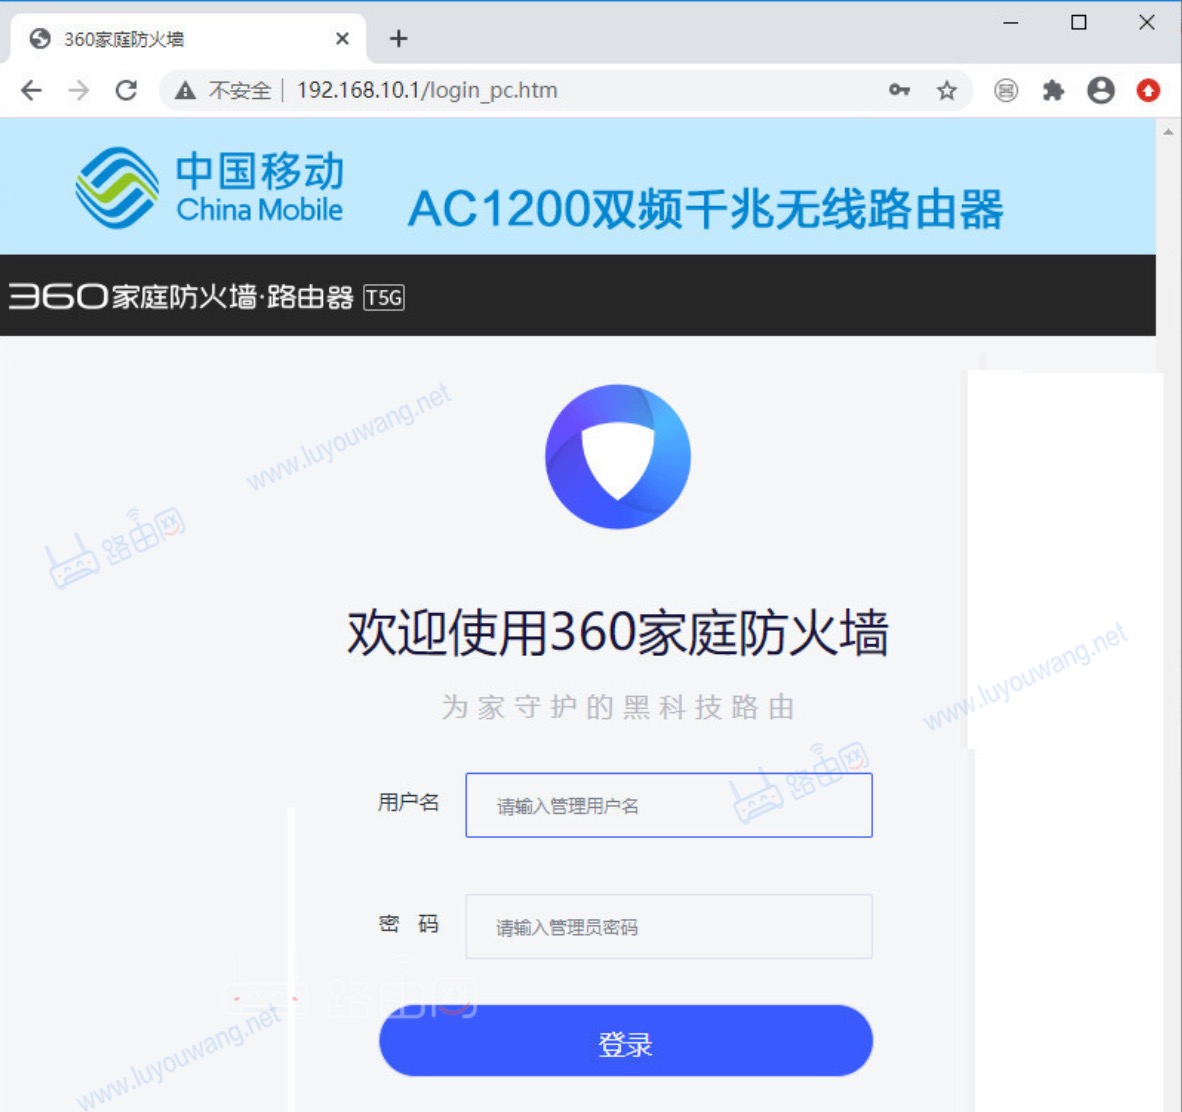 中国移动wifi路由器管理